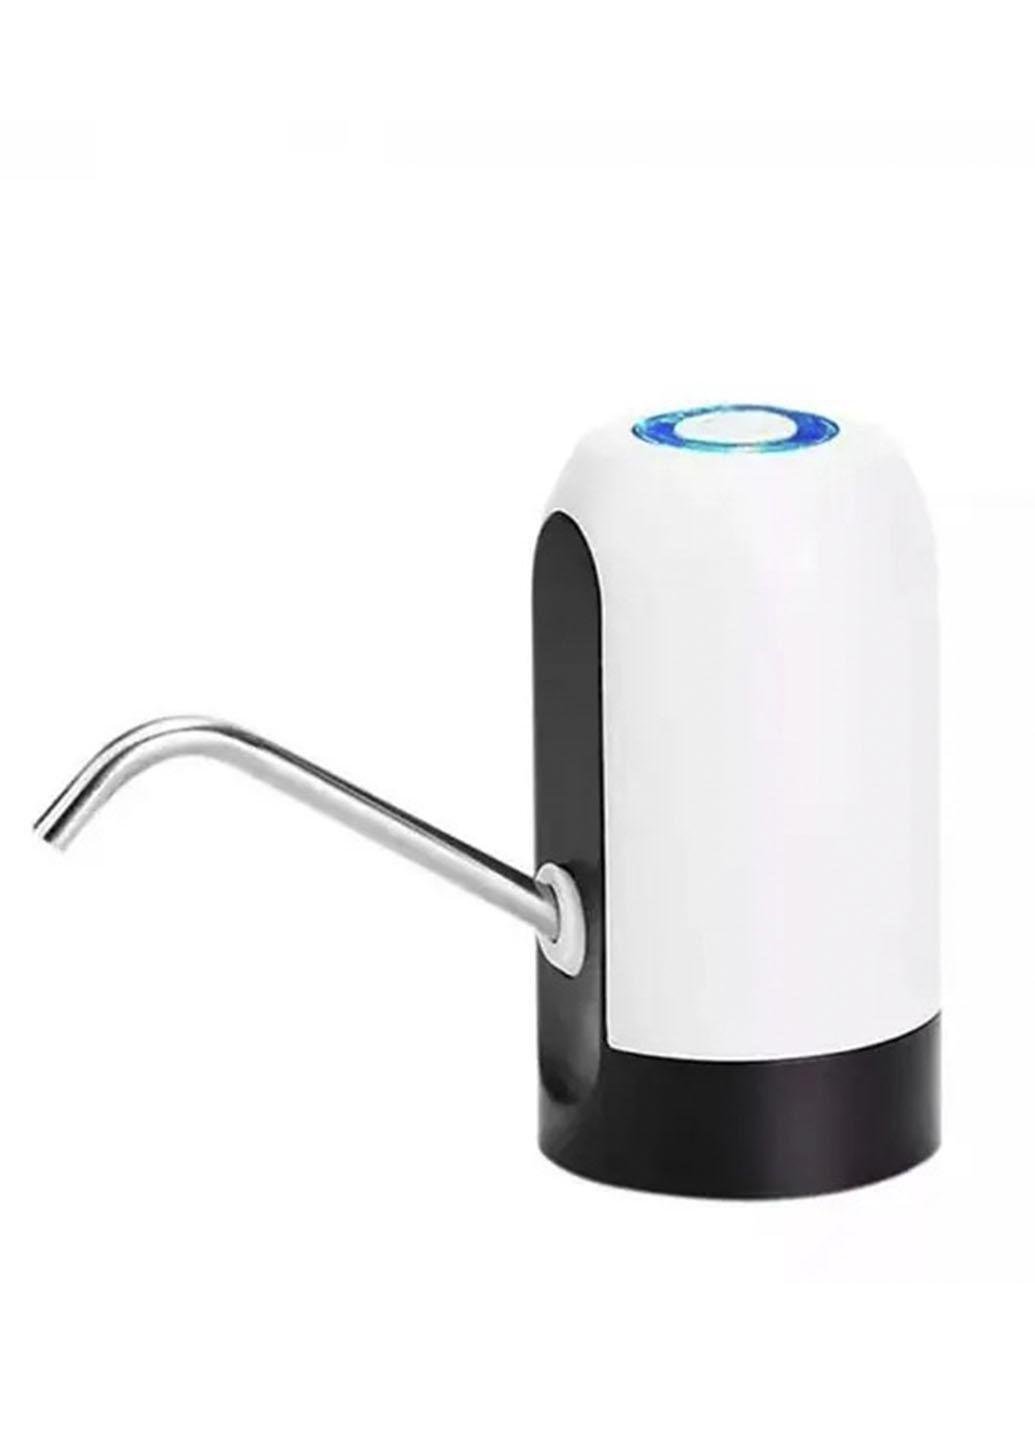 Електропомпа для бутильованої води Xo Water Dispenser EL-1014 акумуляторна Білий (30056А)